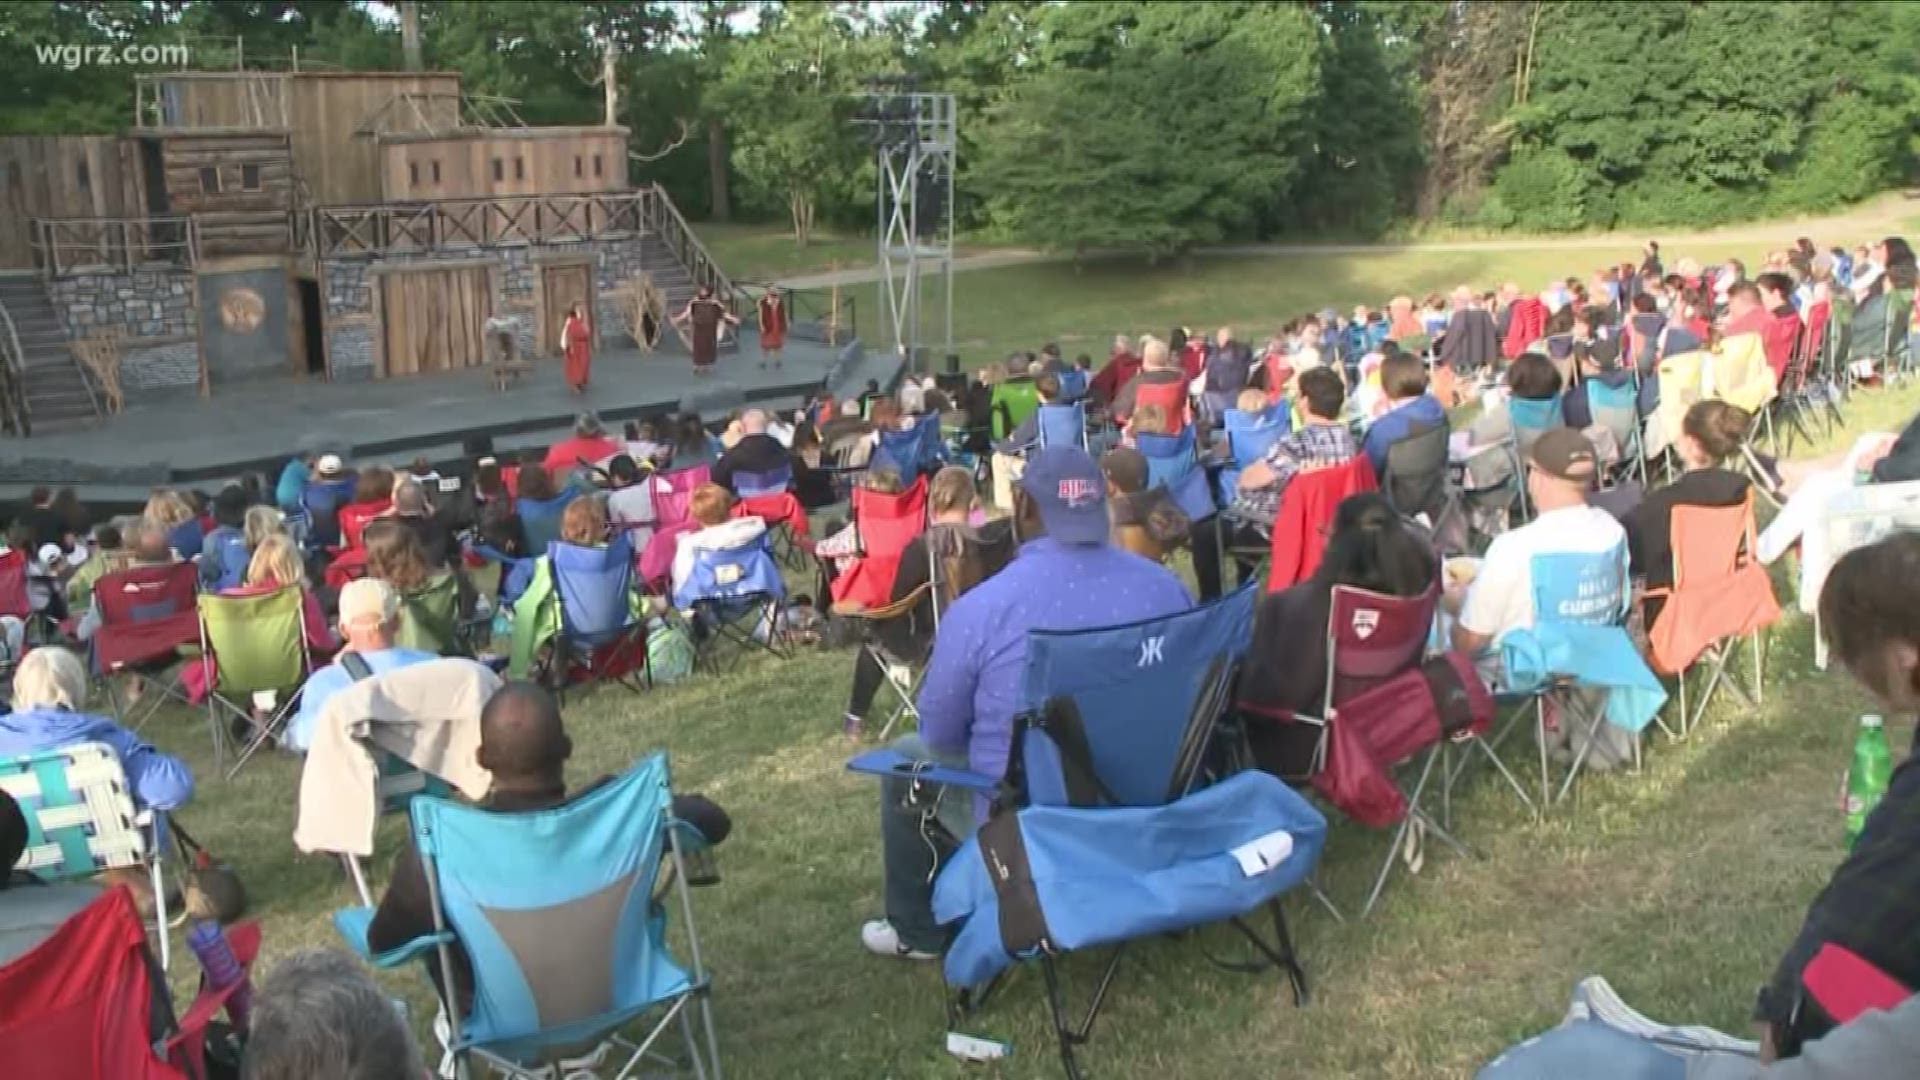 Shakespeare In Delaware Park Returns